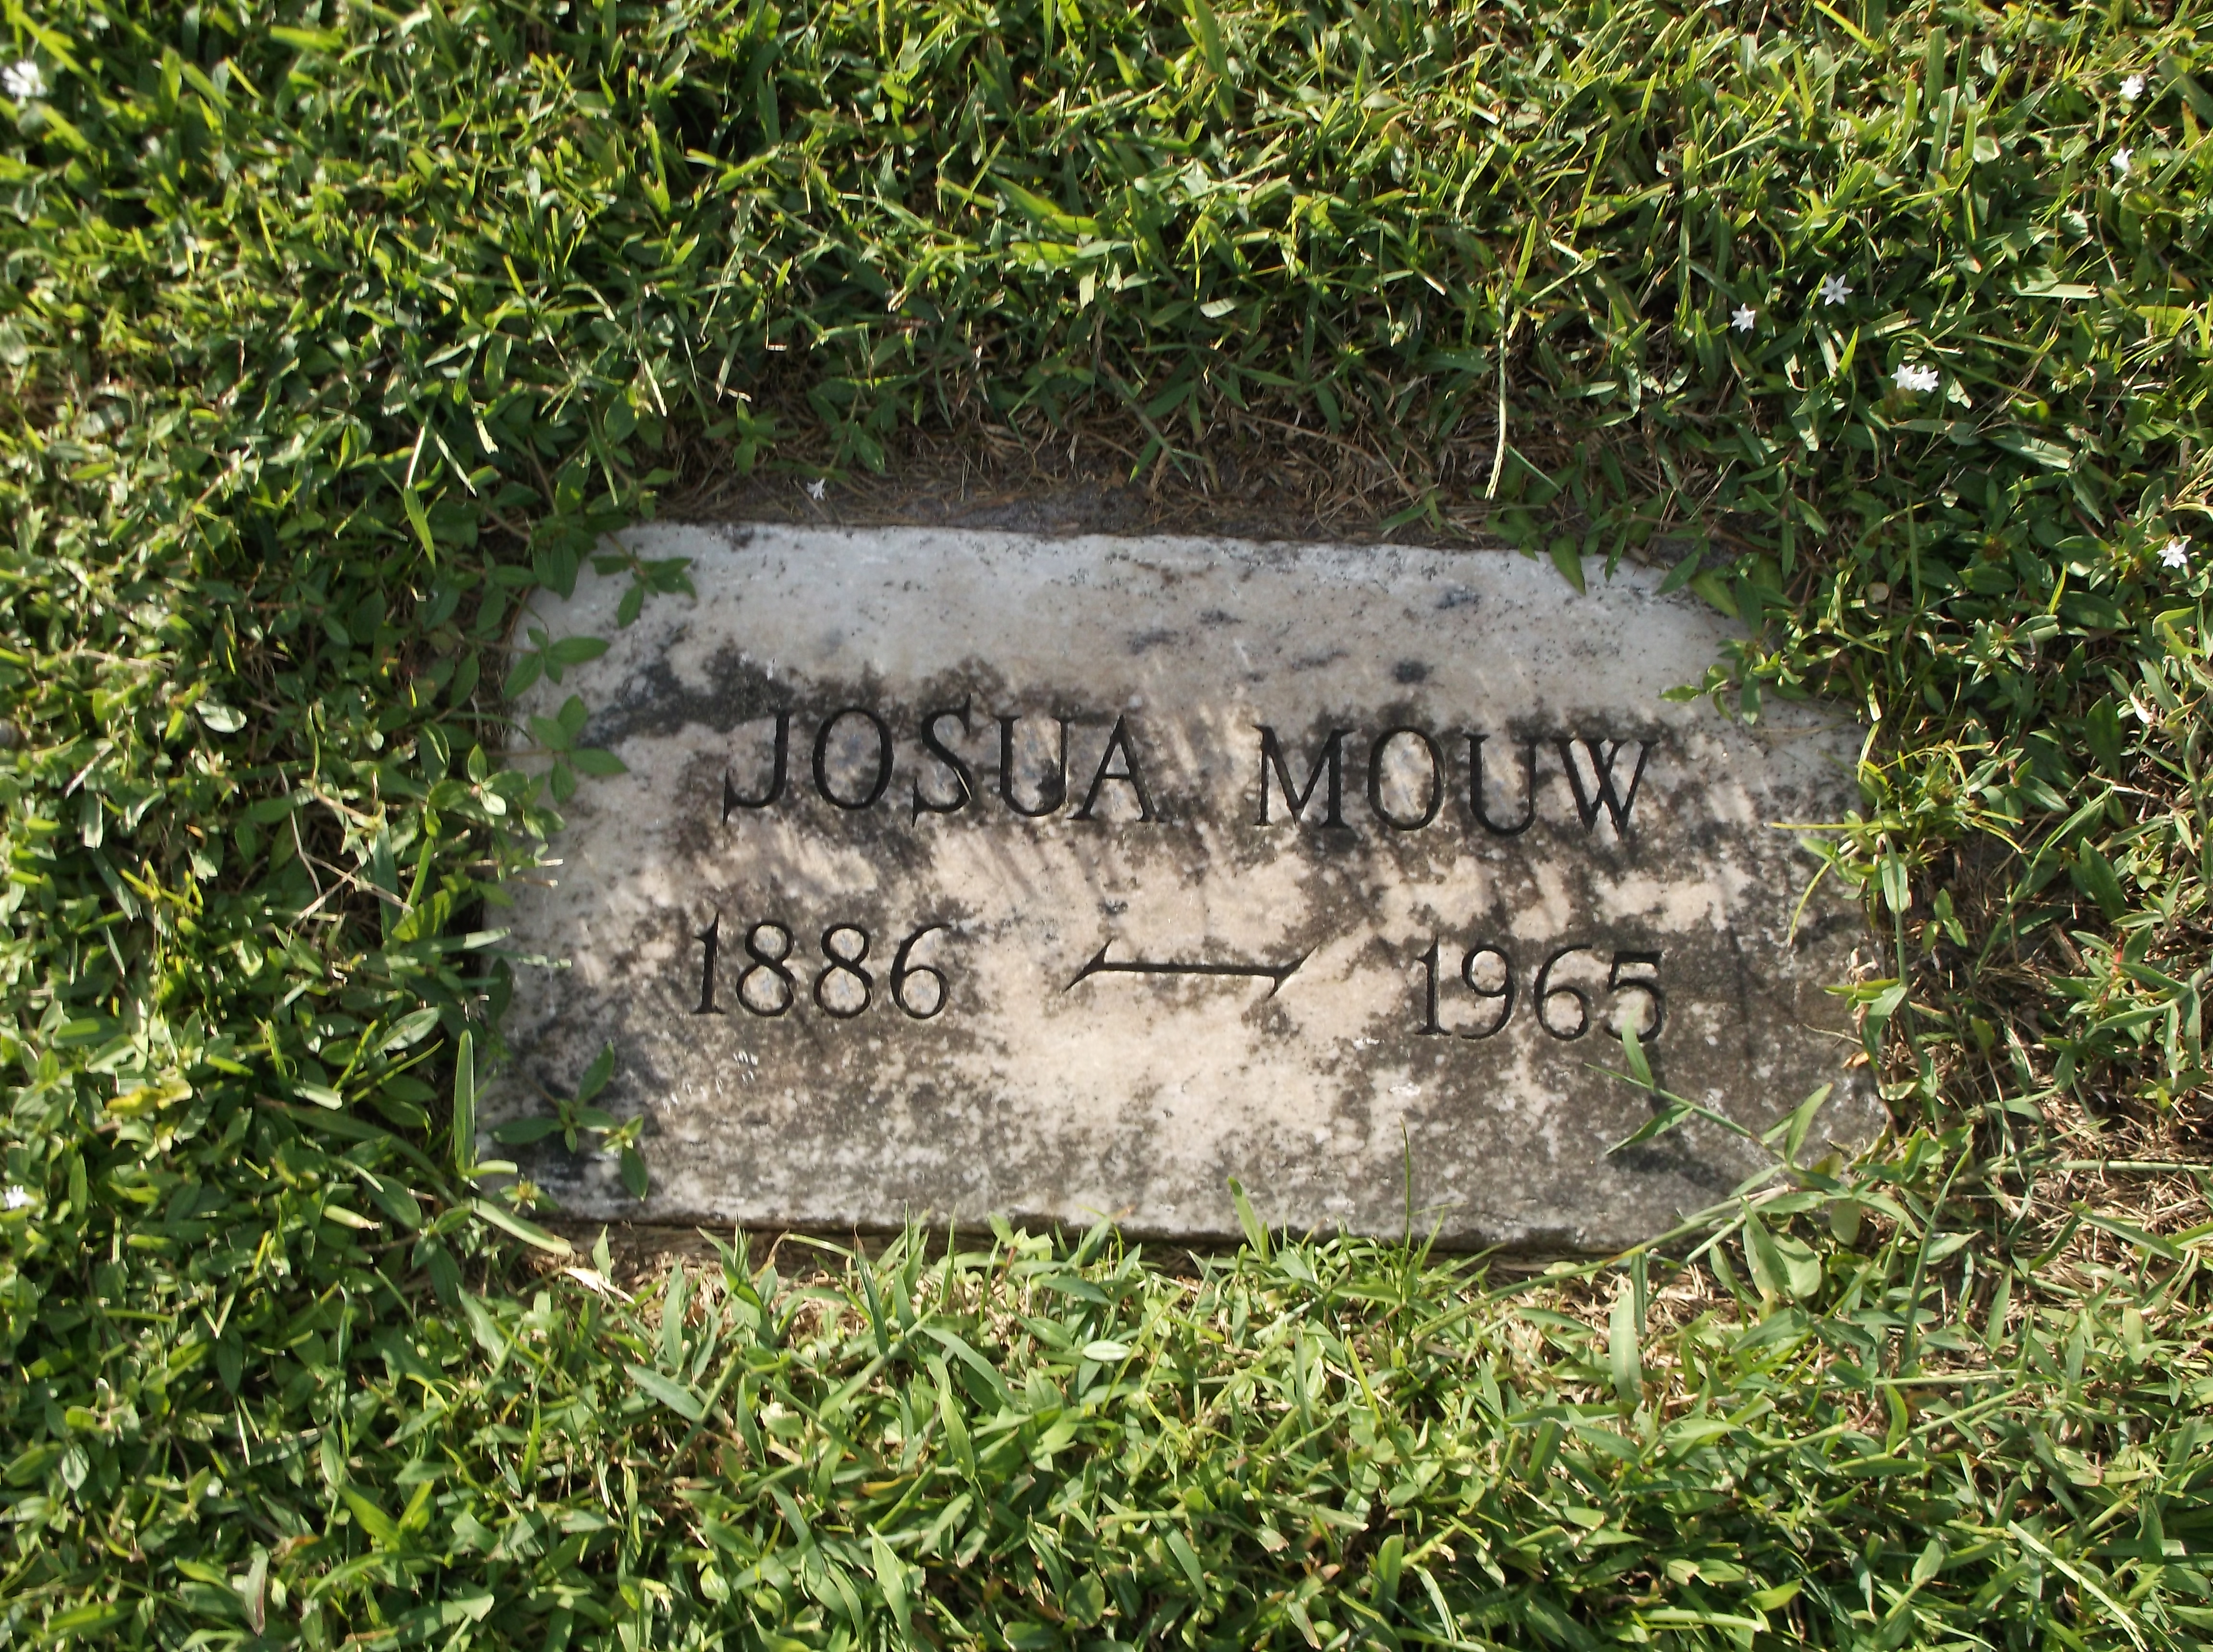 Josua Mouw